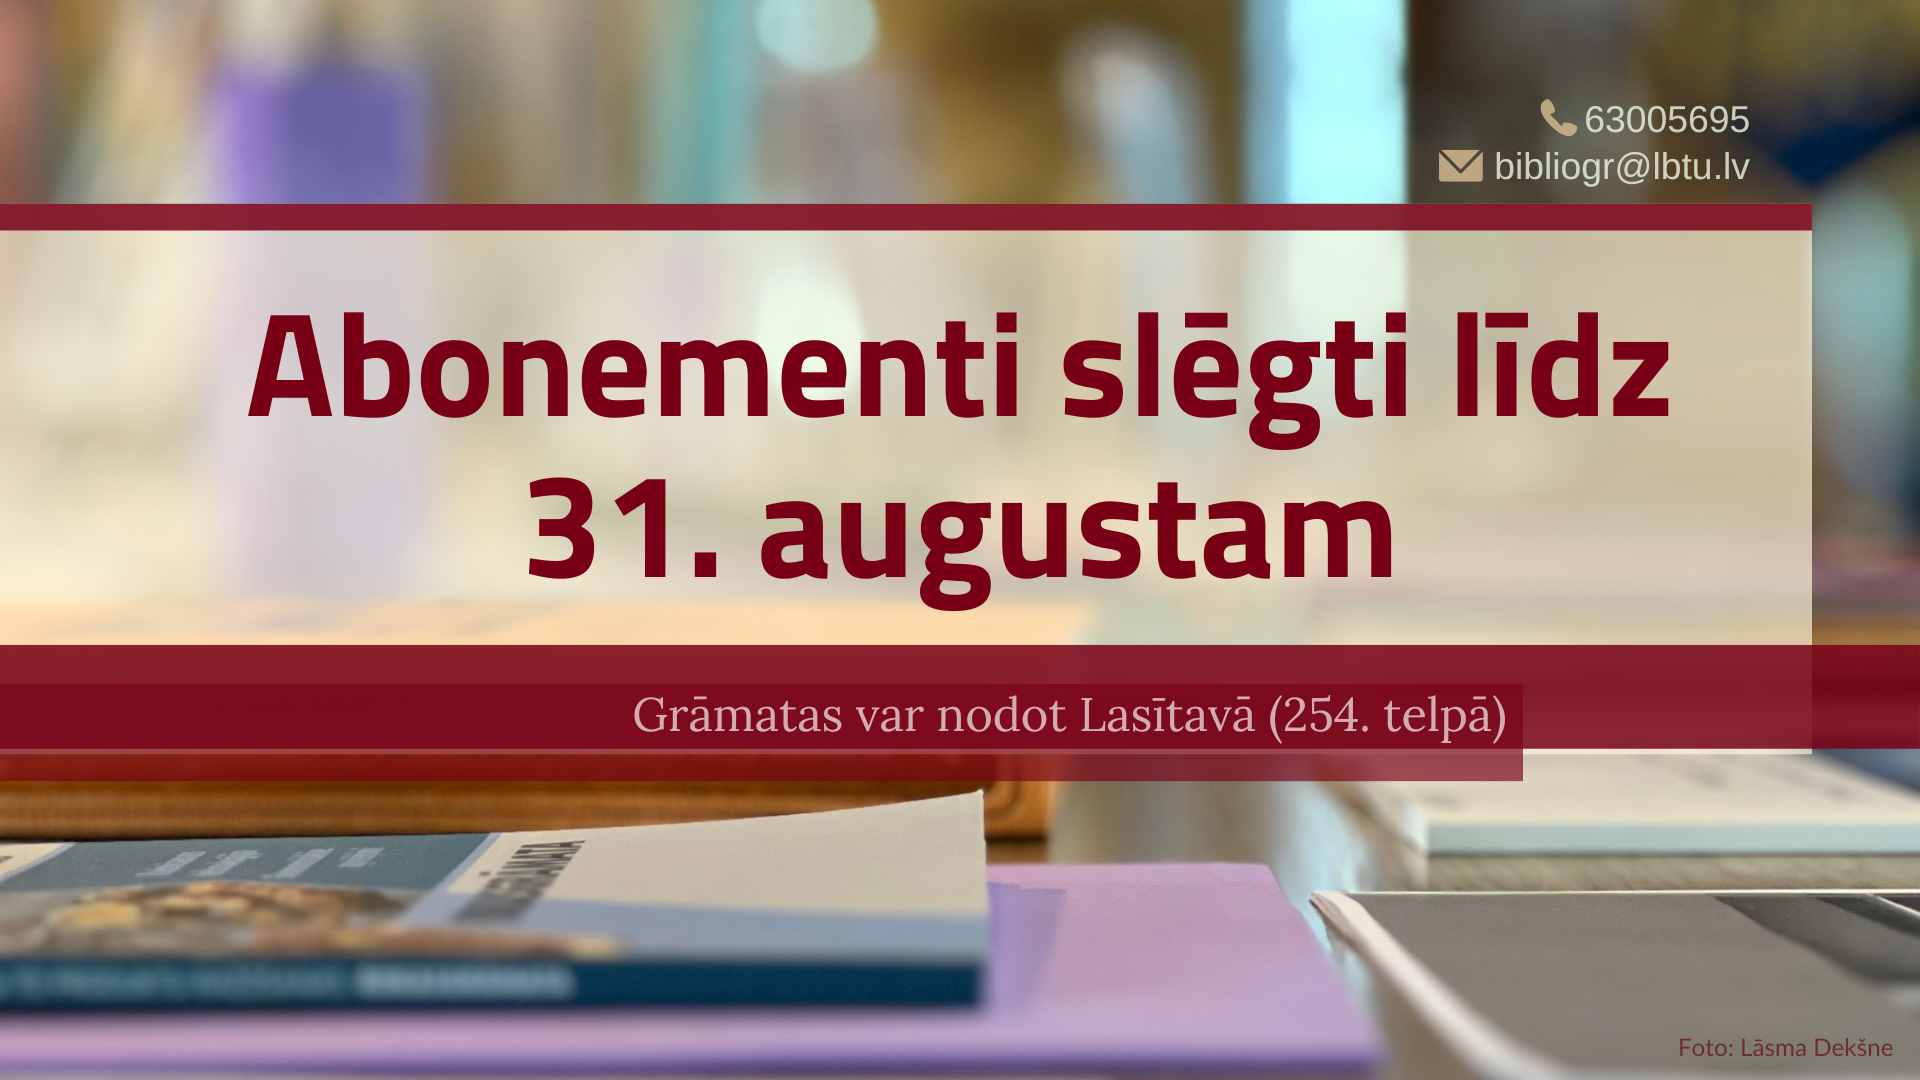 Grāmatas var atdot Lasītavā (254. telpā) darbadienās no plkst. 9.00 līdz 17.00. Abonementi slēgti līdz 31. augustam. 